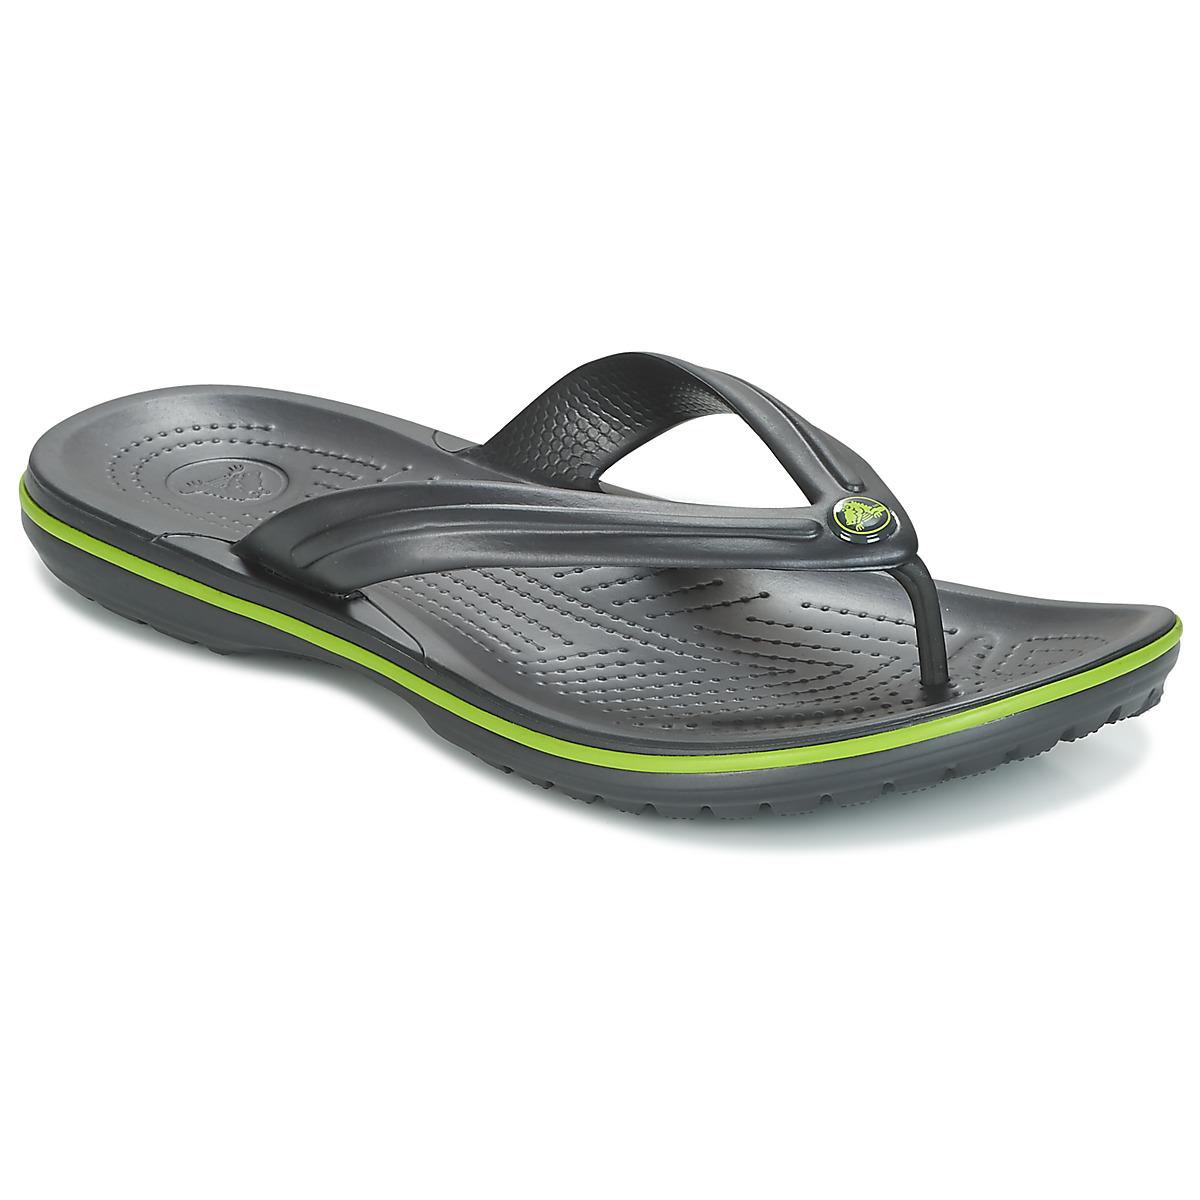  Crocs   Synthetic Crocband Flip  Men s  Flip  Flops  Sandals 